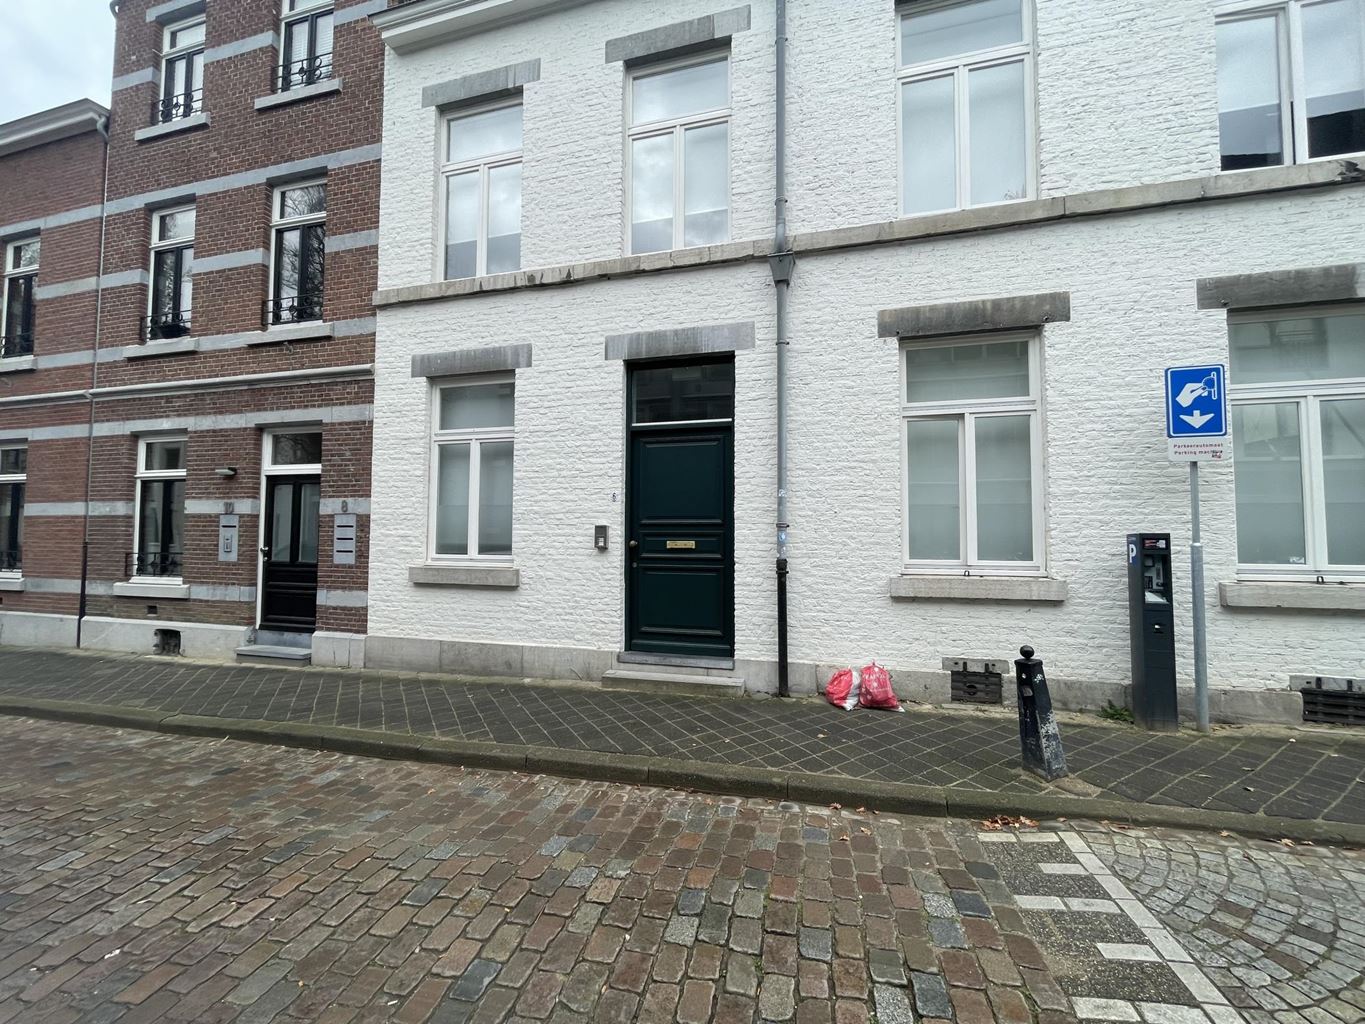 Bekijk foto 1/14 van apartment in Maastricht